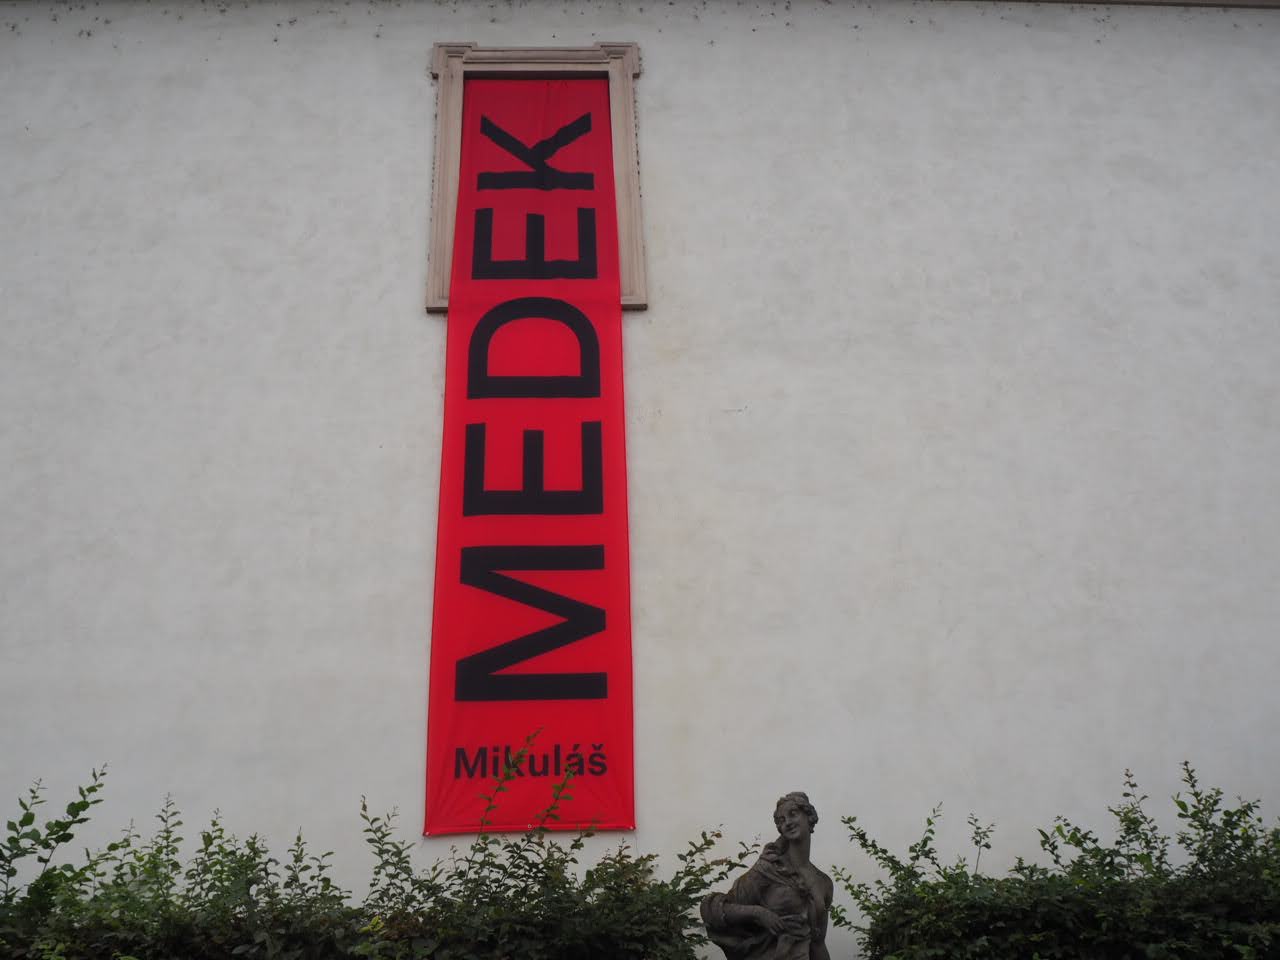 Mikuláš Medek Nahý v trní národní galerie výstava expozice